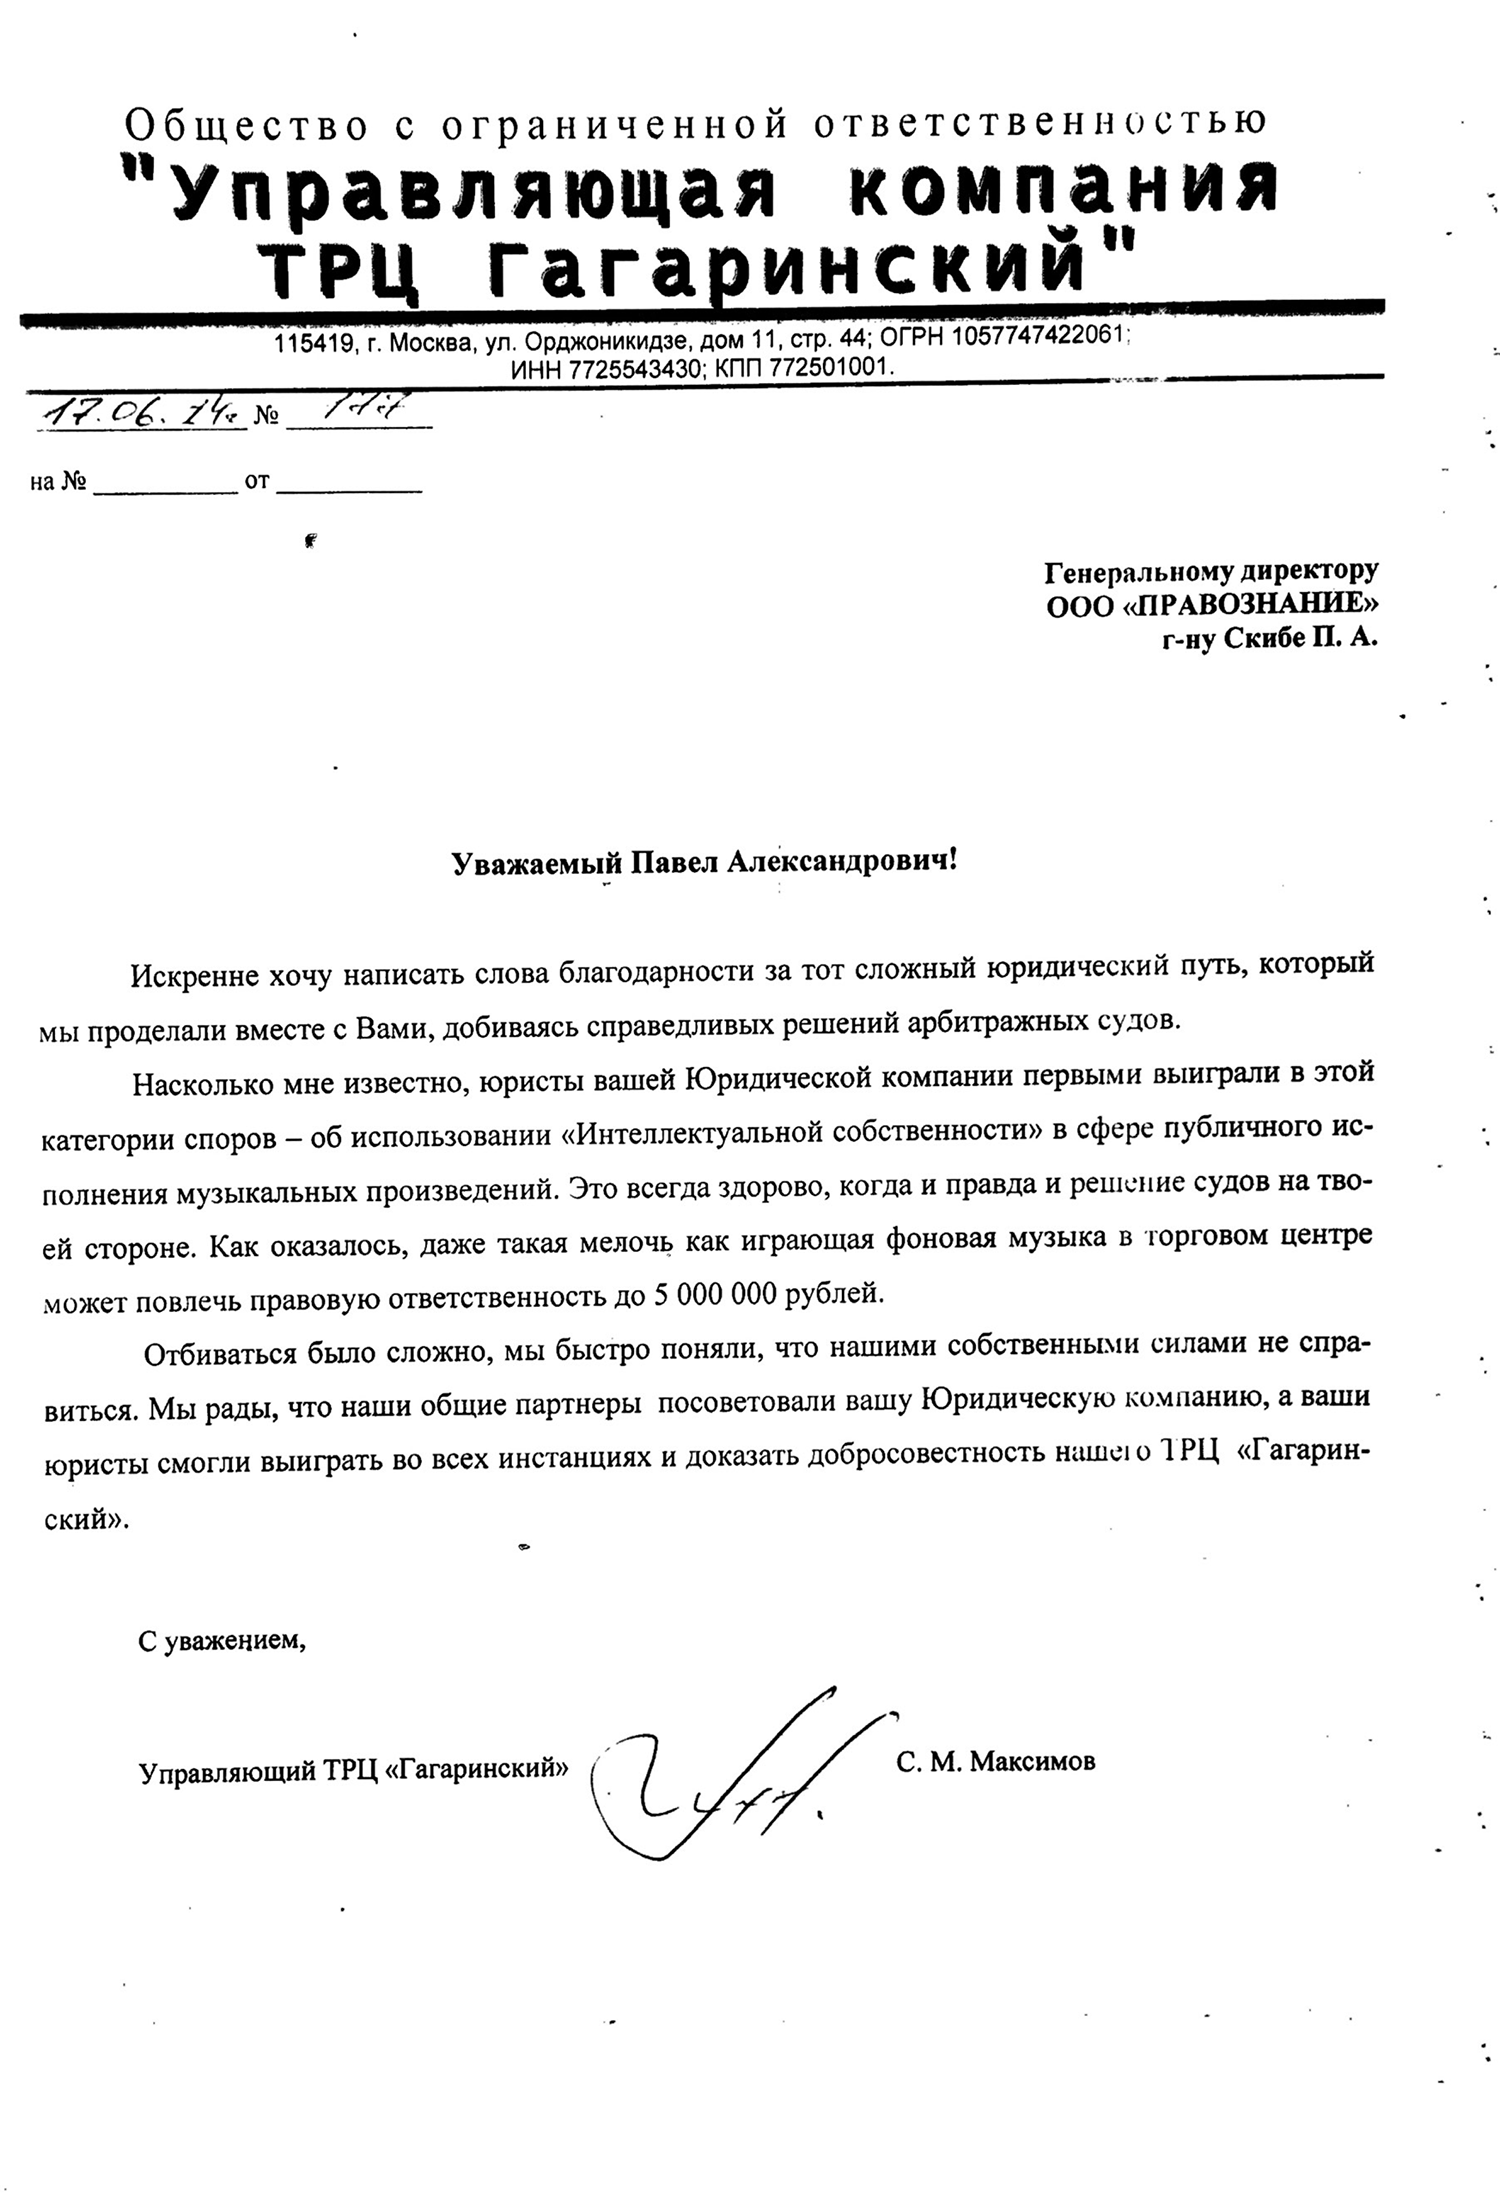 Письмо благодарности от ТРЦ Гагаринский